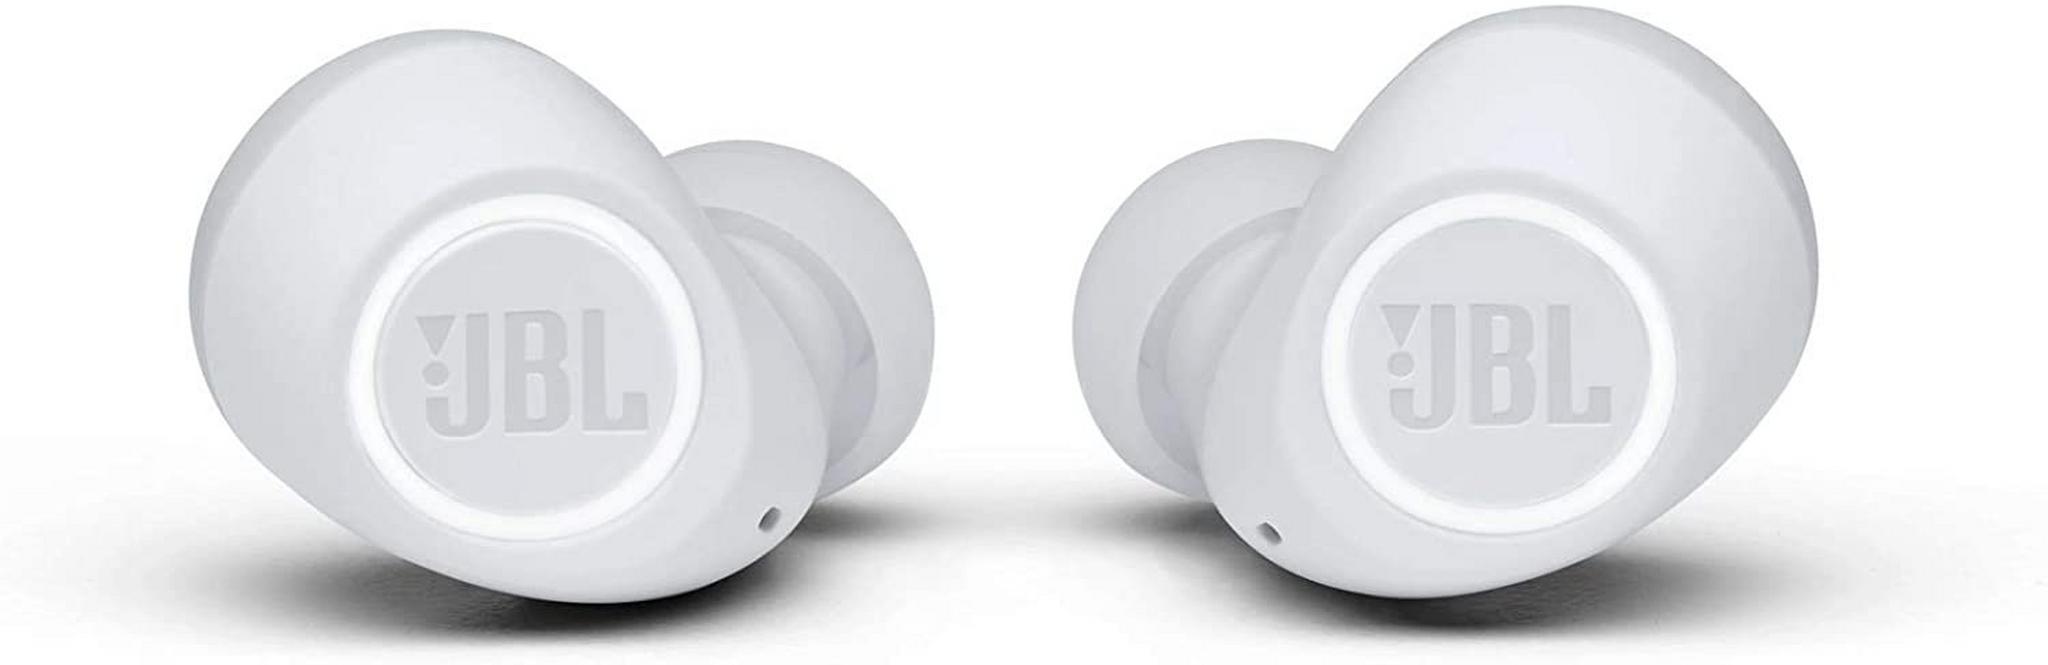 JBL Free II Wireless Earbuds - White